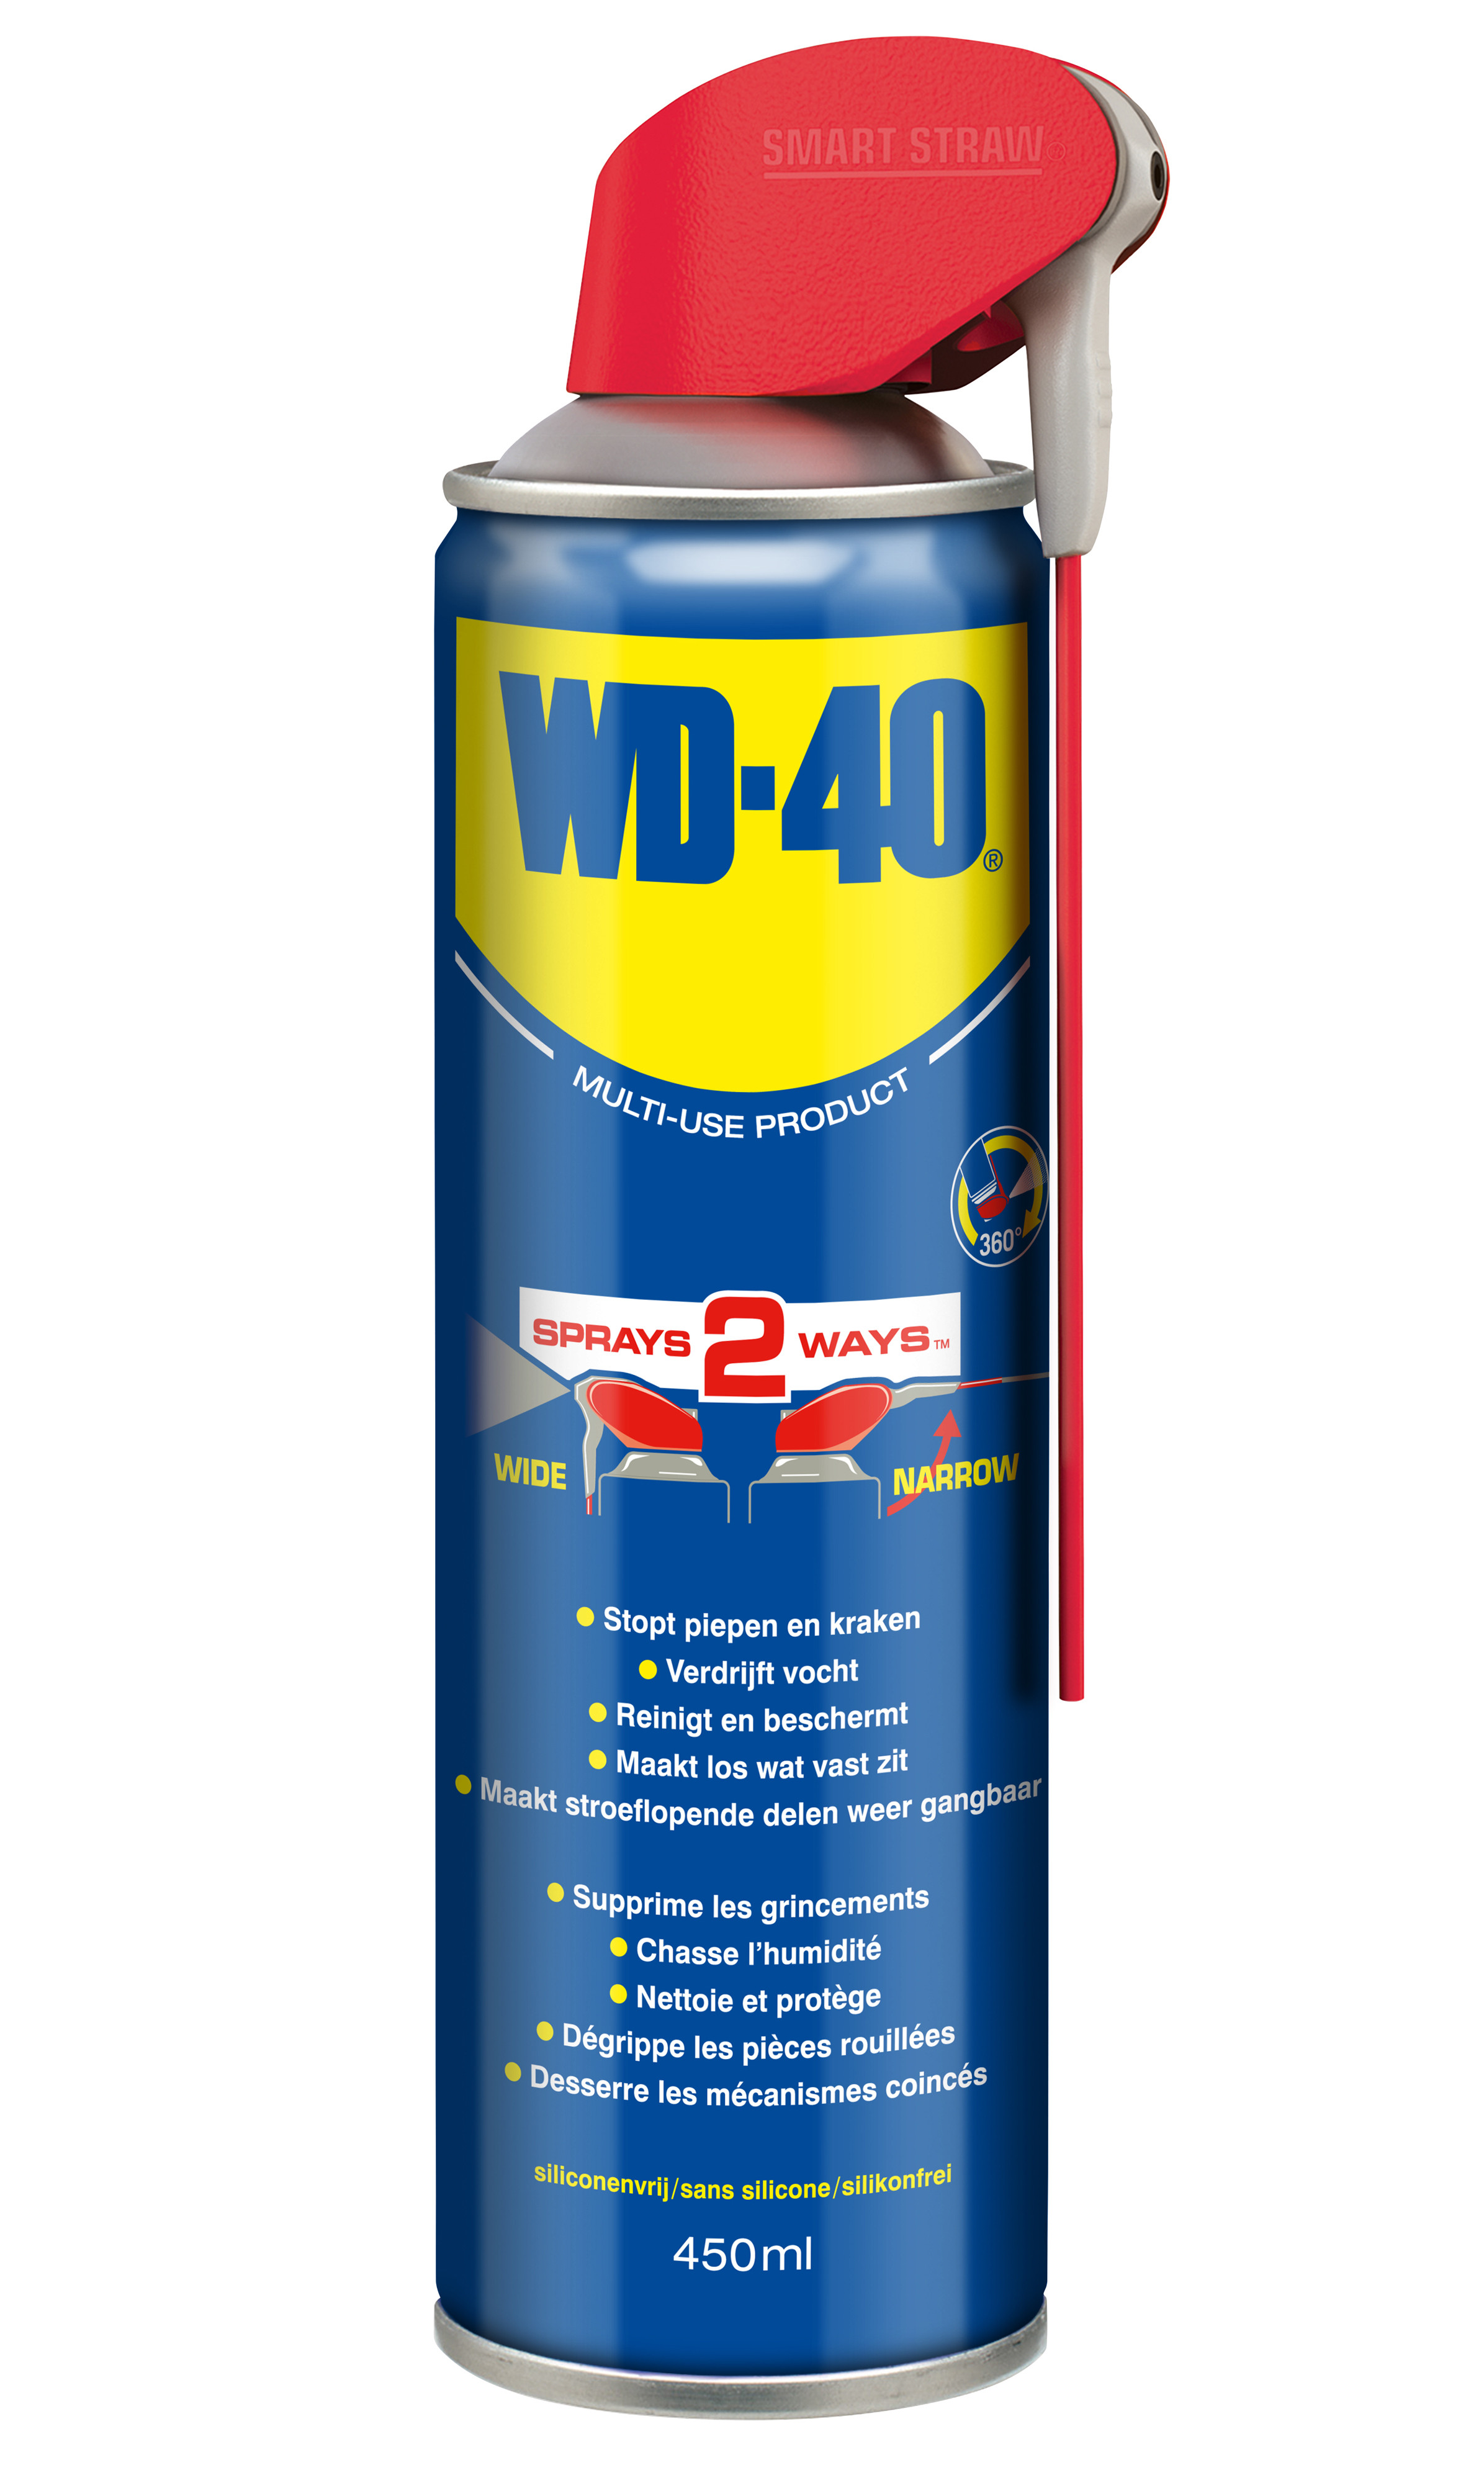 Smeermiddel WD-40 smart 450ml.